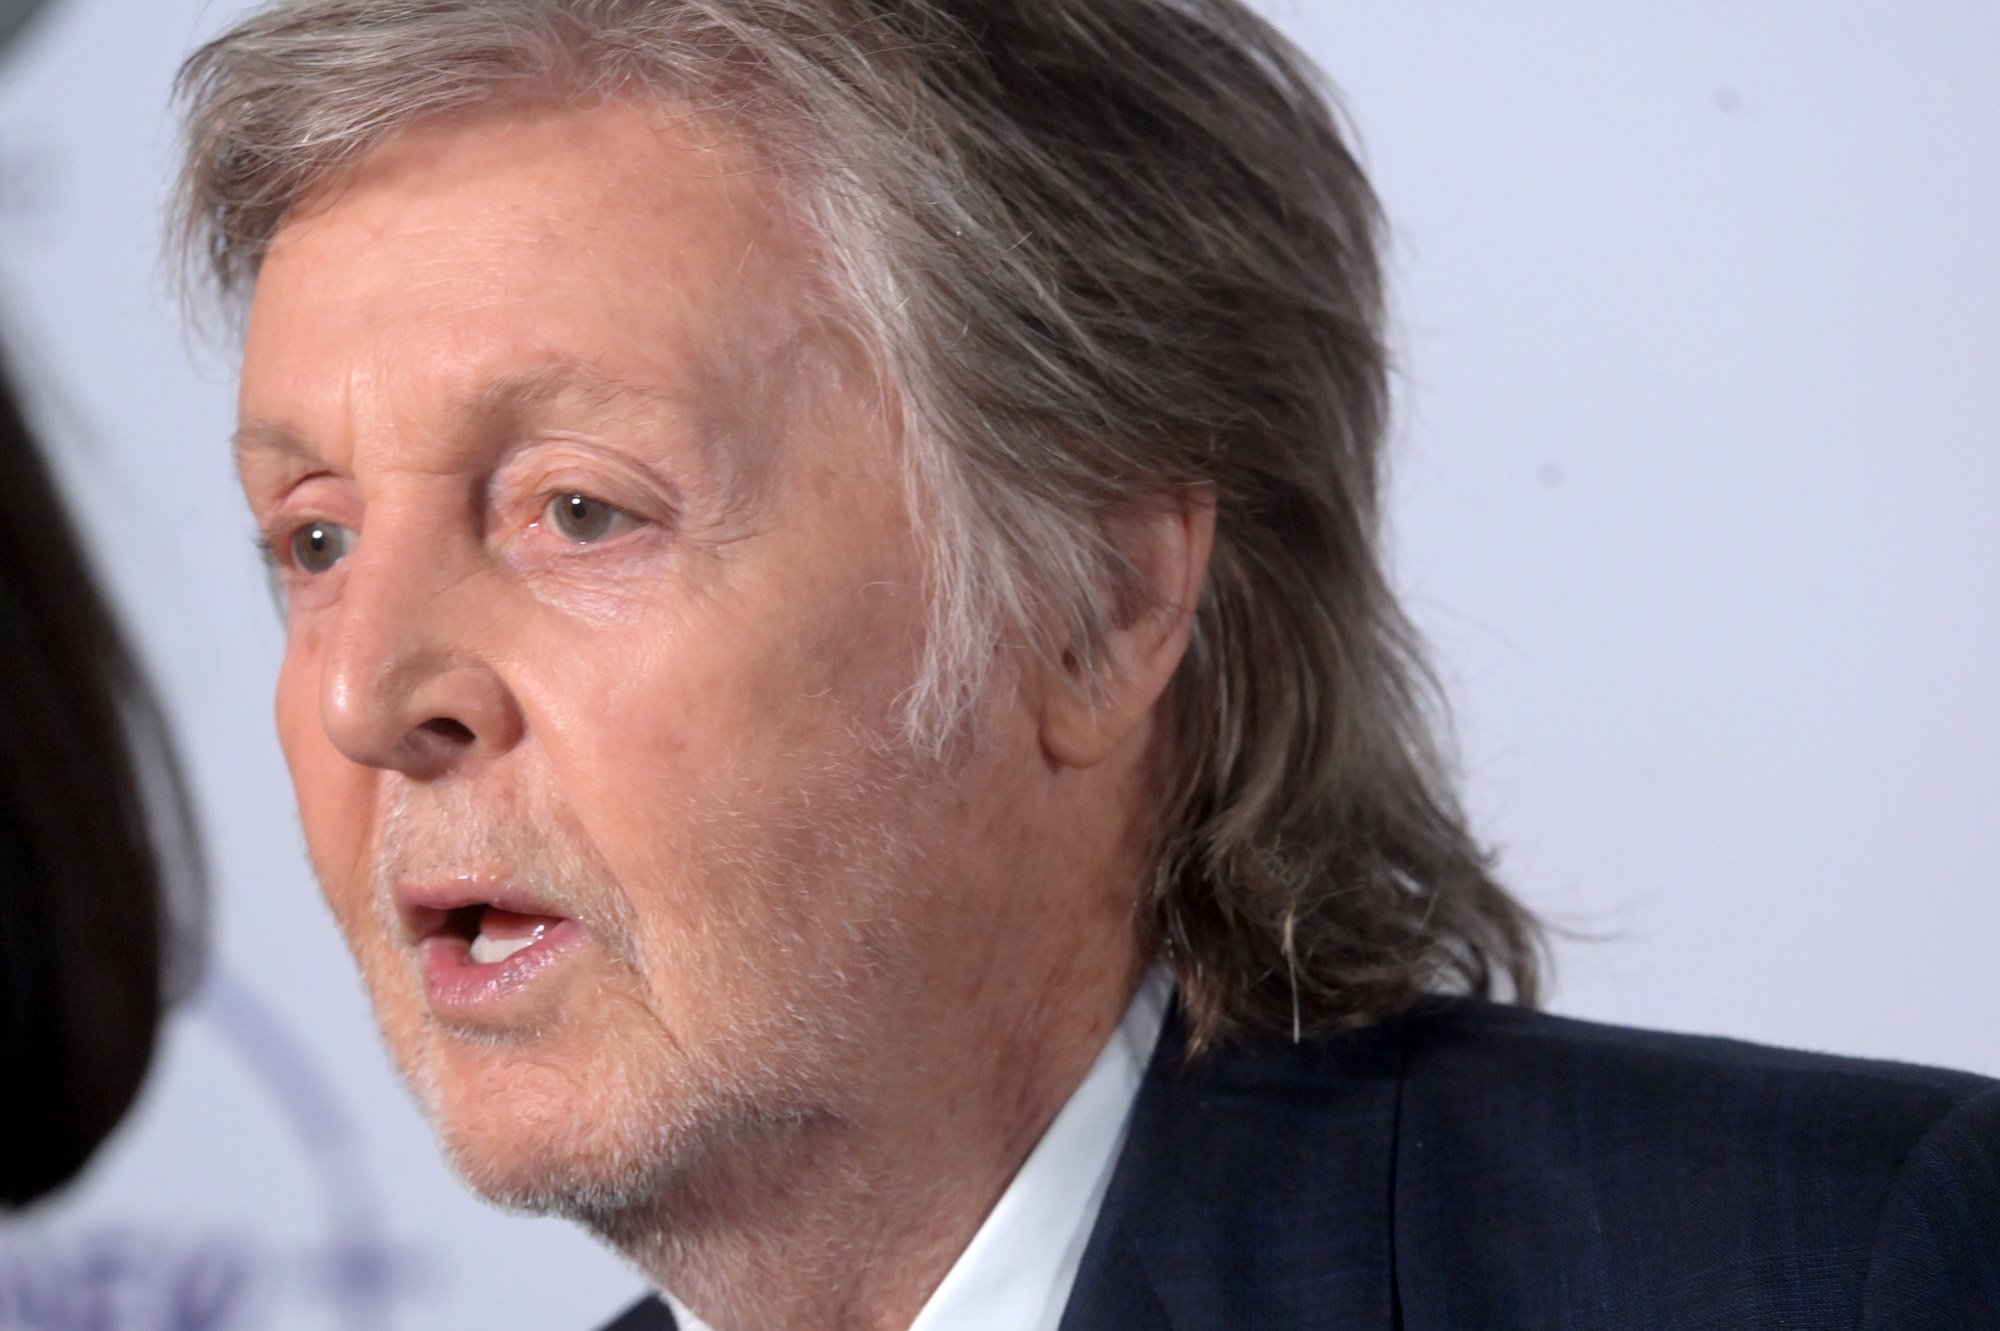 Paul McCartney speaks at 'The Beatles: Get Back' premiere